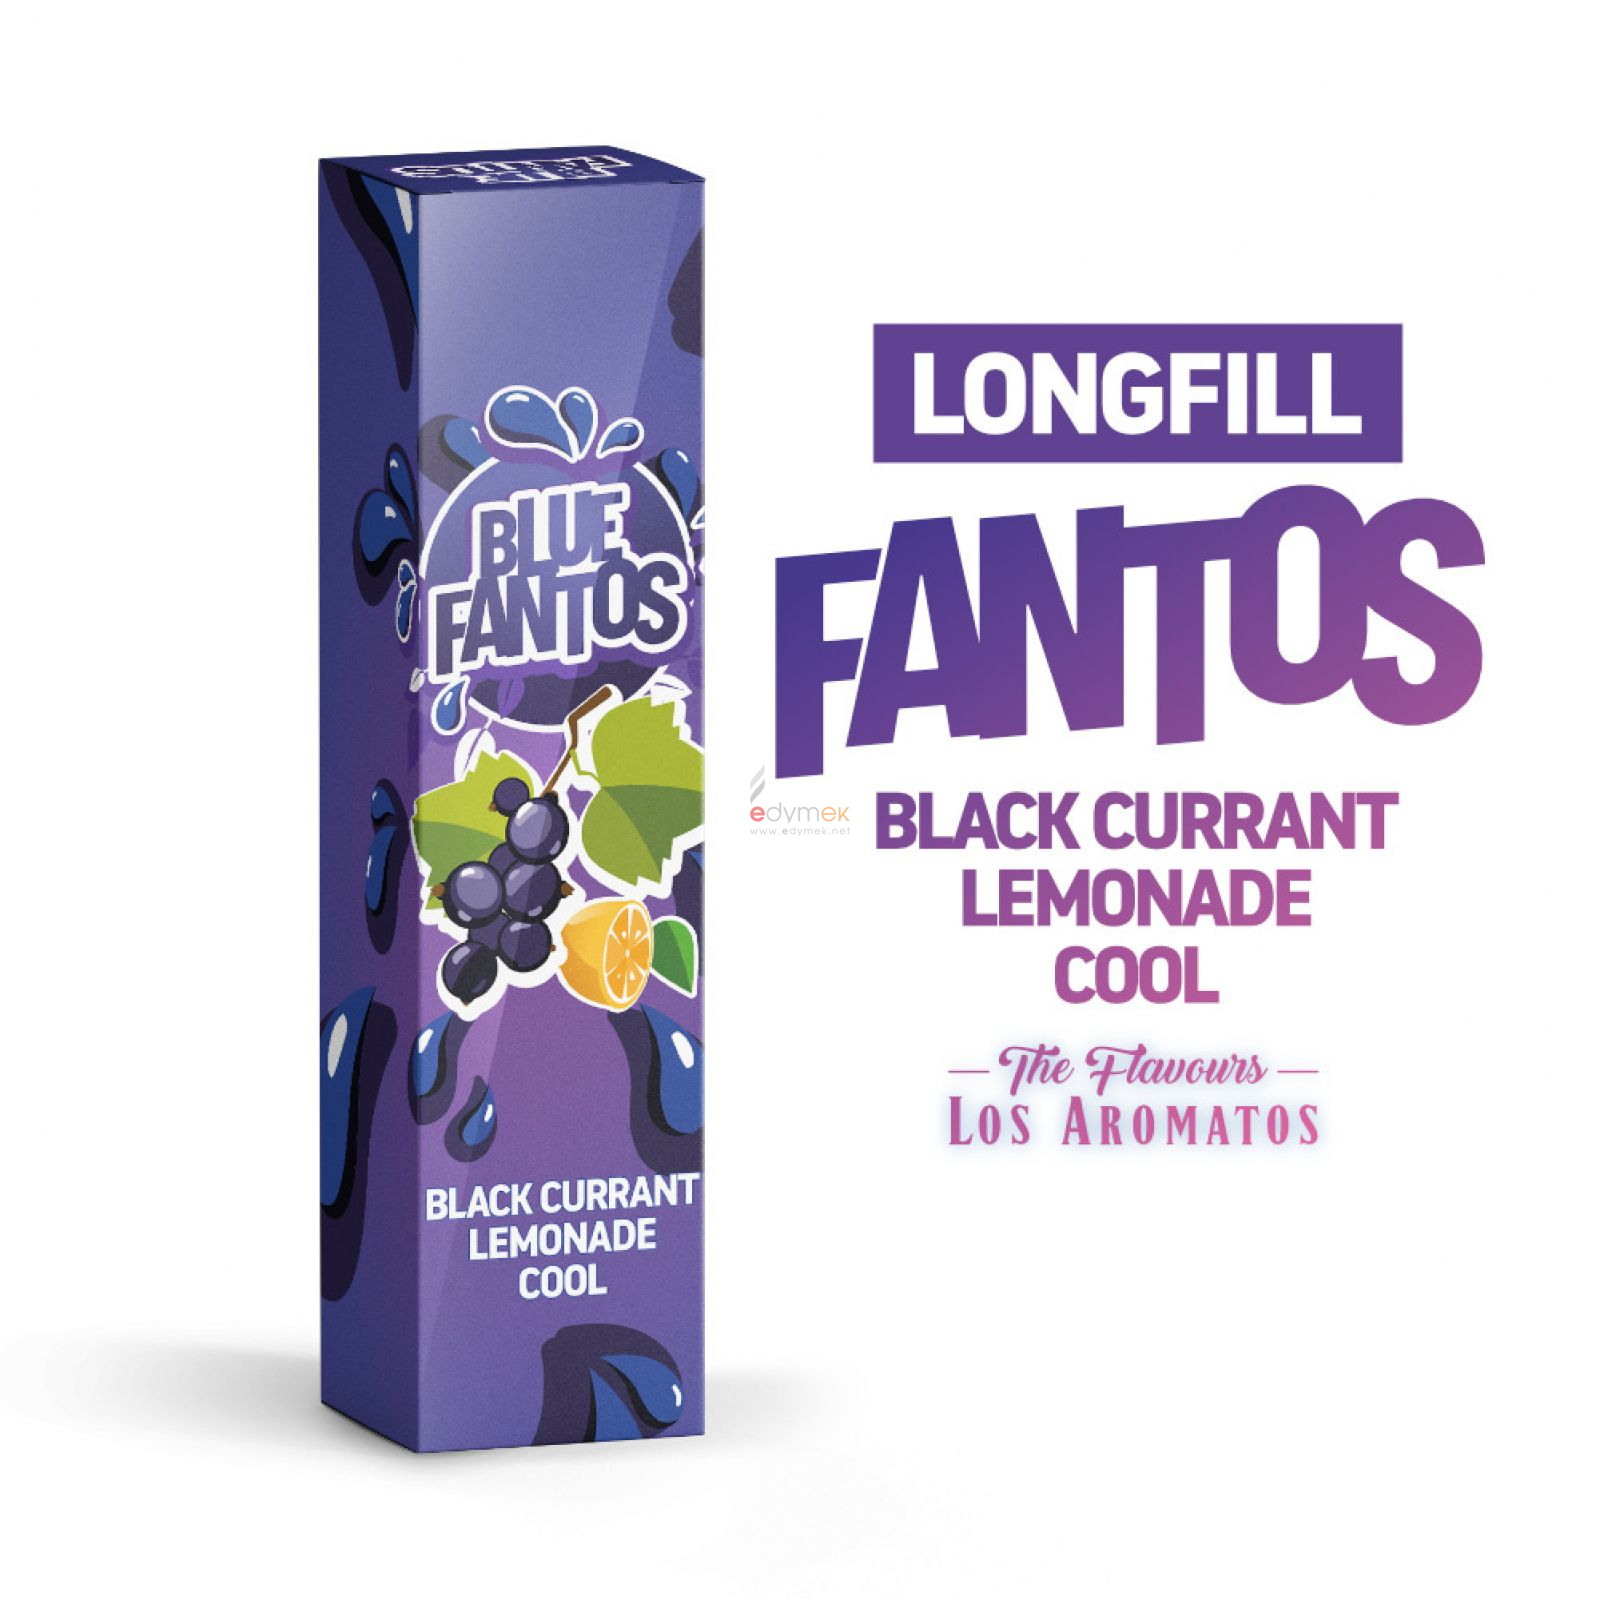 longfill-fantos-koncentrat-9ml-blue-fantos-7e9fa0705329494b9ec02dd9f620473b-2c6d3e8f.jpg